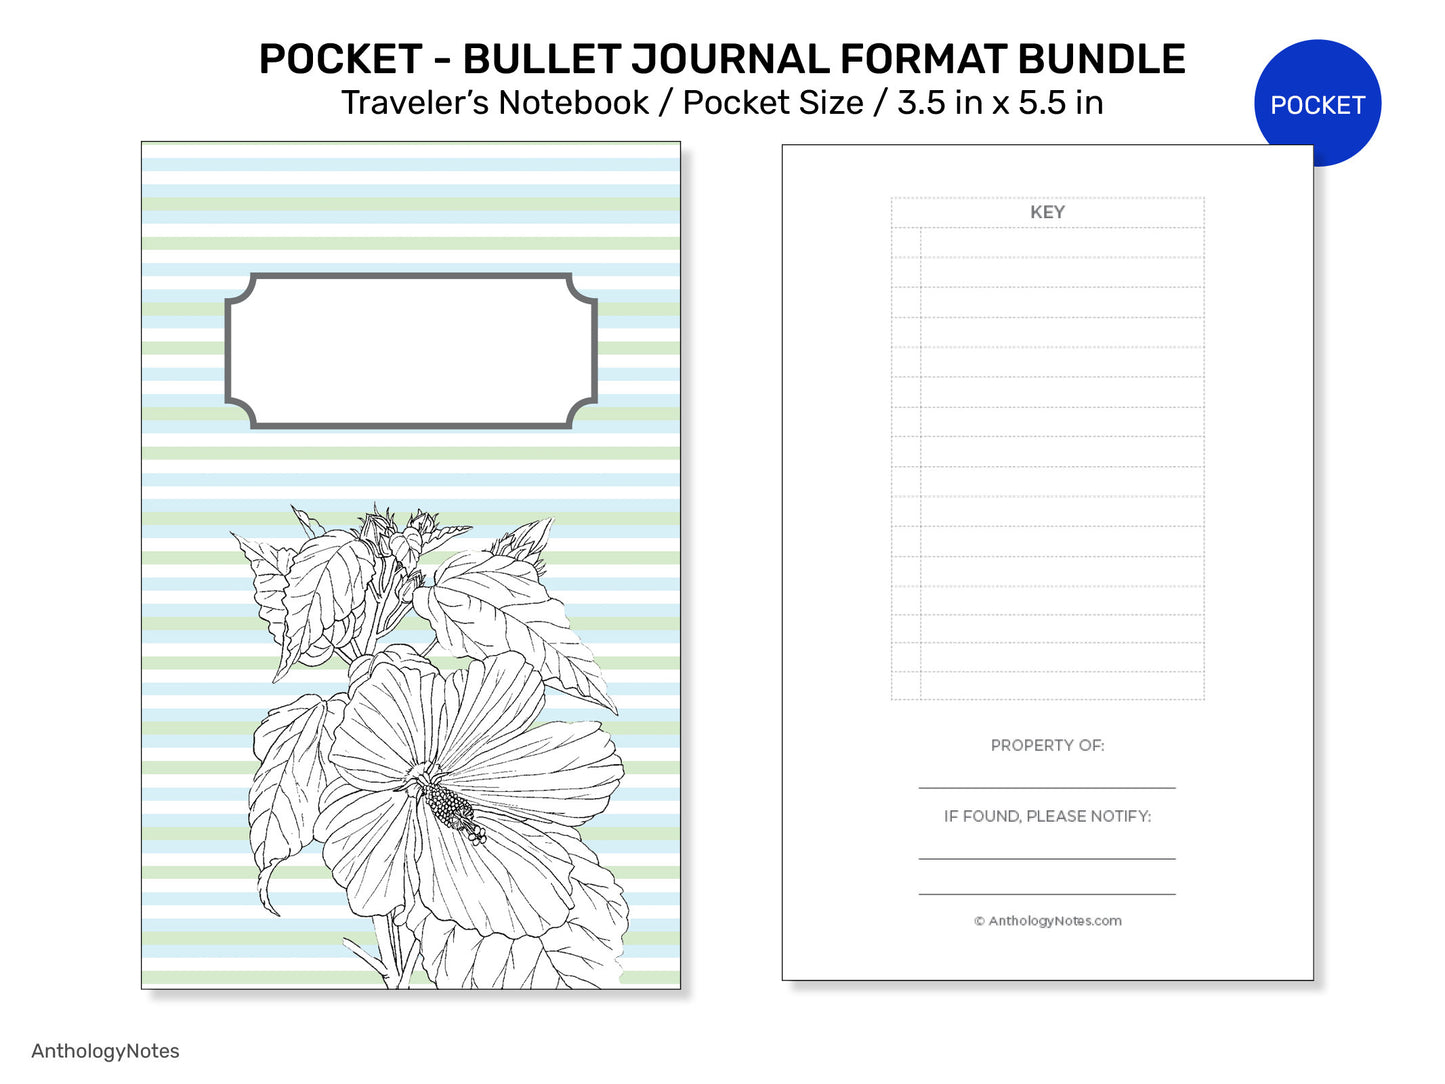 TN POCKET BUNDLE Set Traveler's Notebook Printable Planner BUJo format